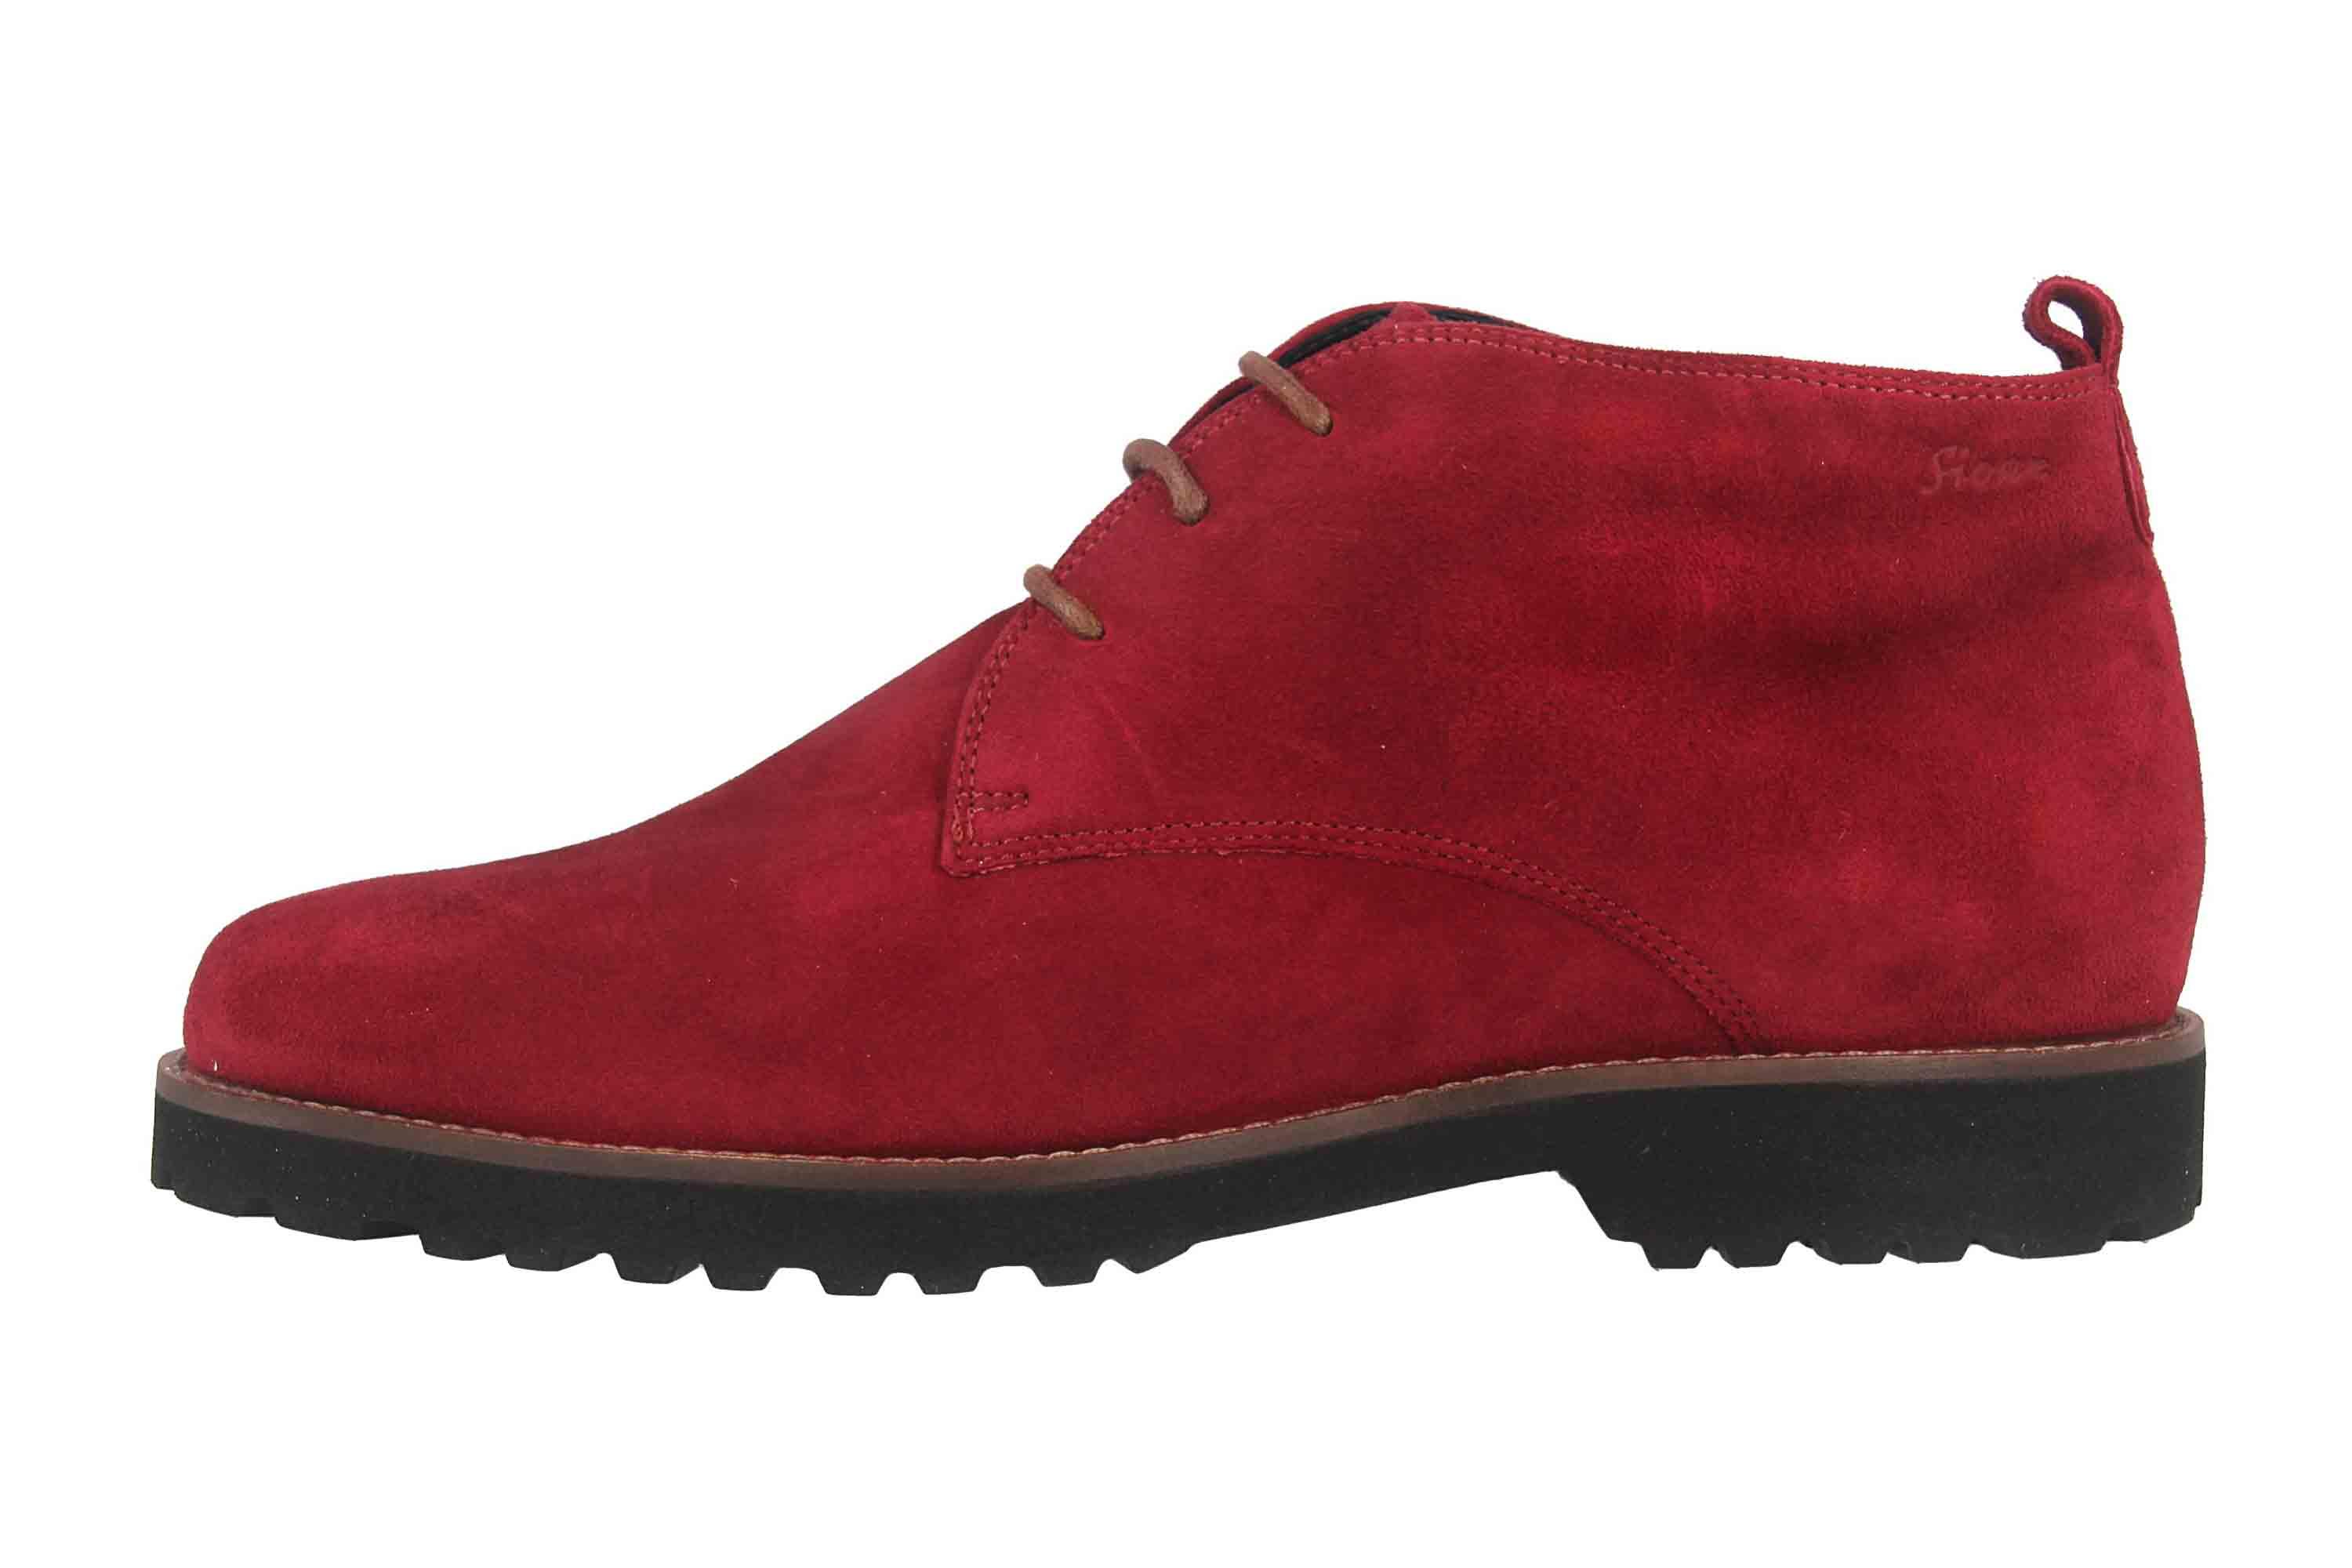 Ботинки Sioux Stiefel, красный ботинки sioux stiefel mered 730 tex wf h коньячный